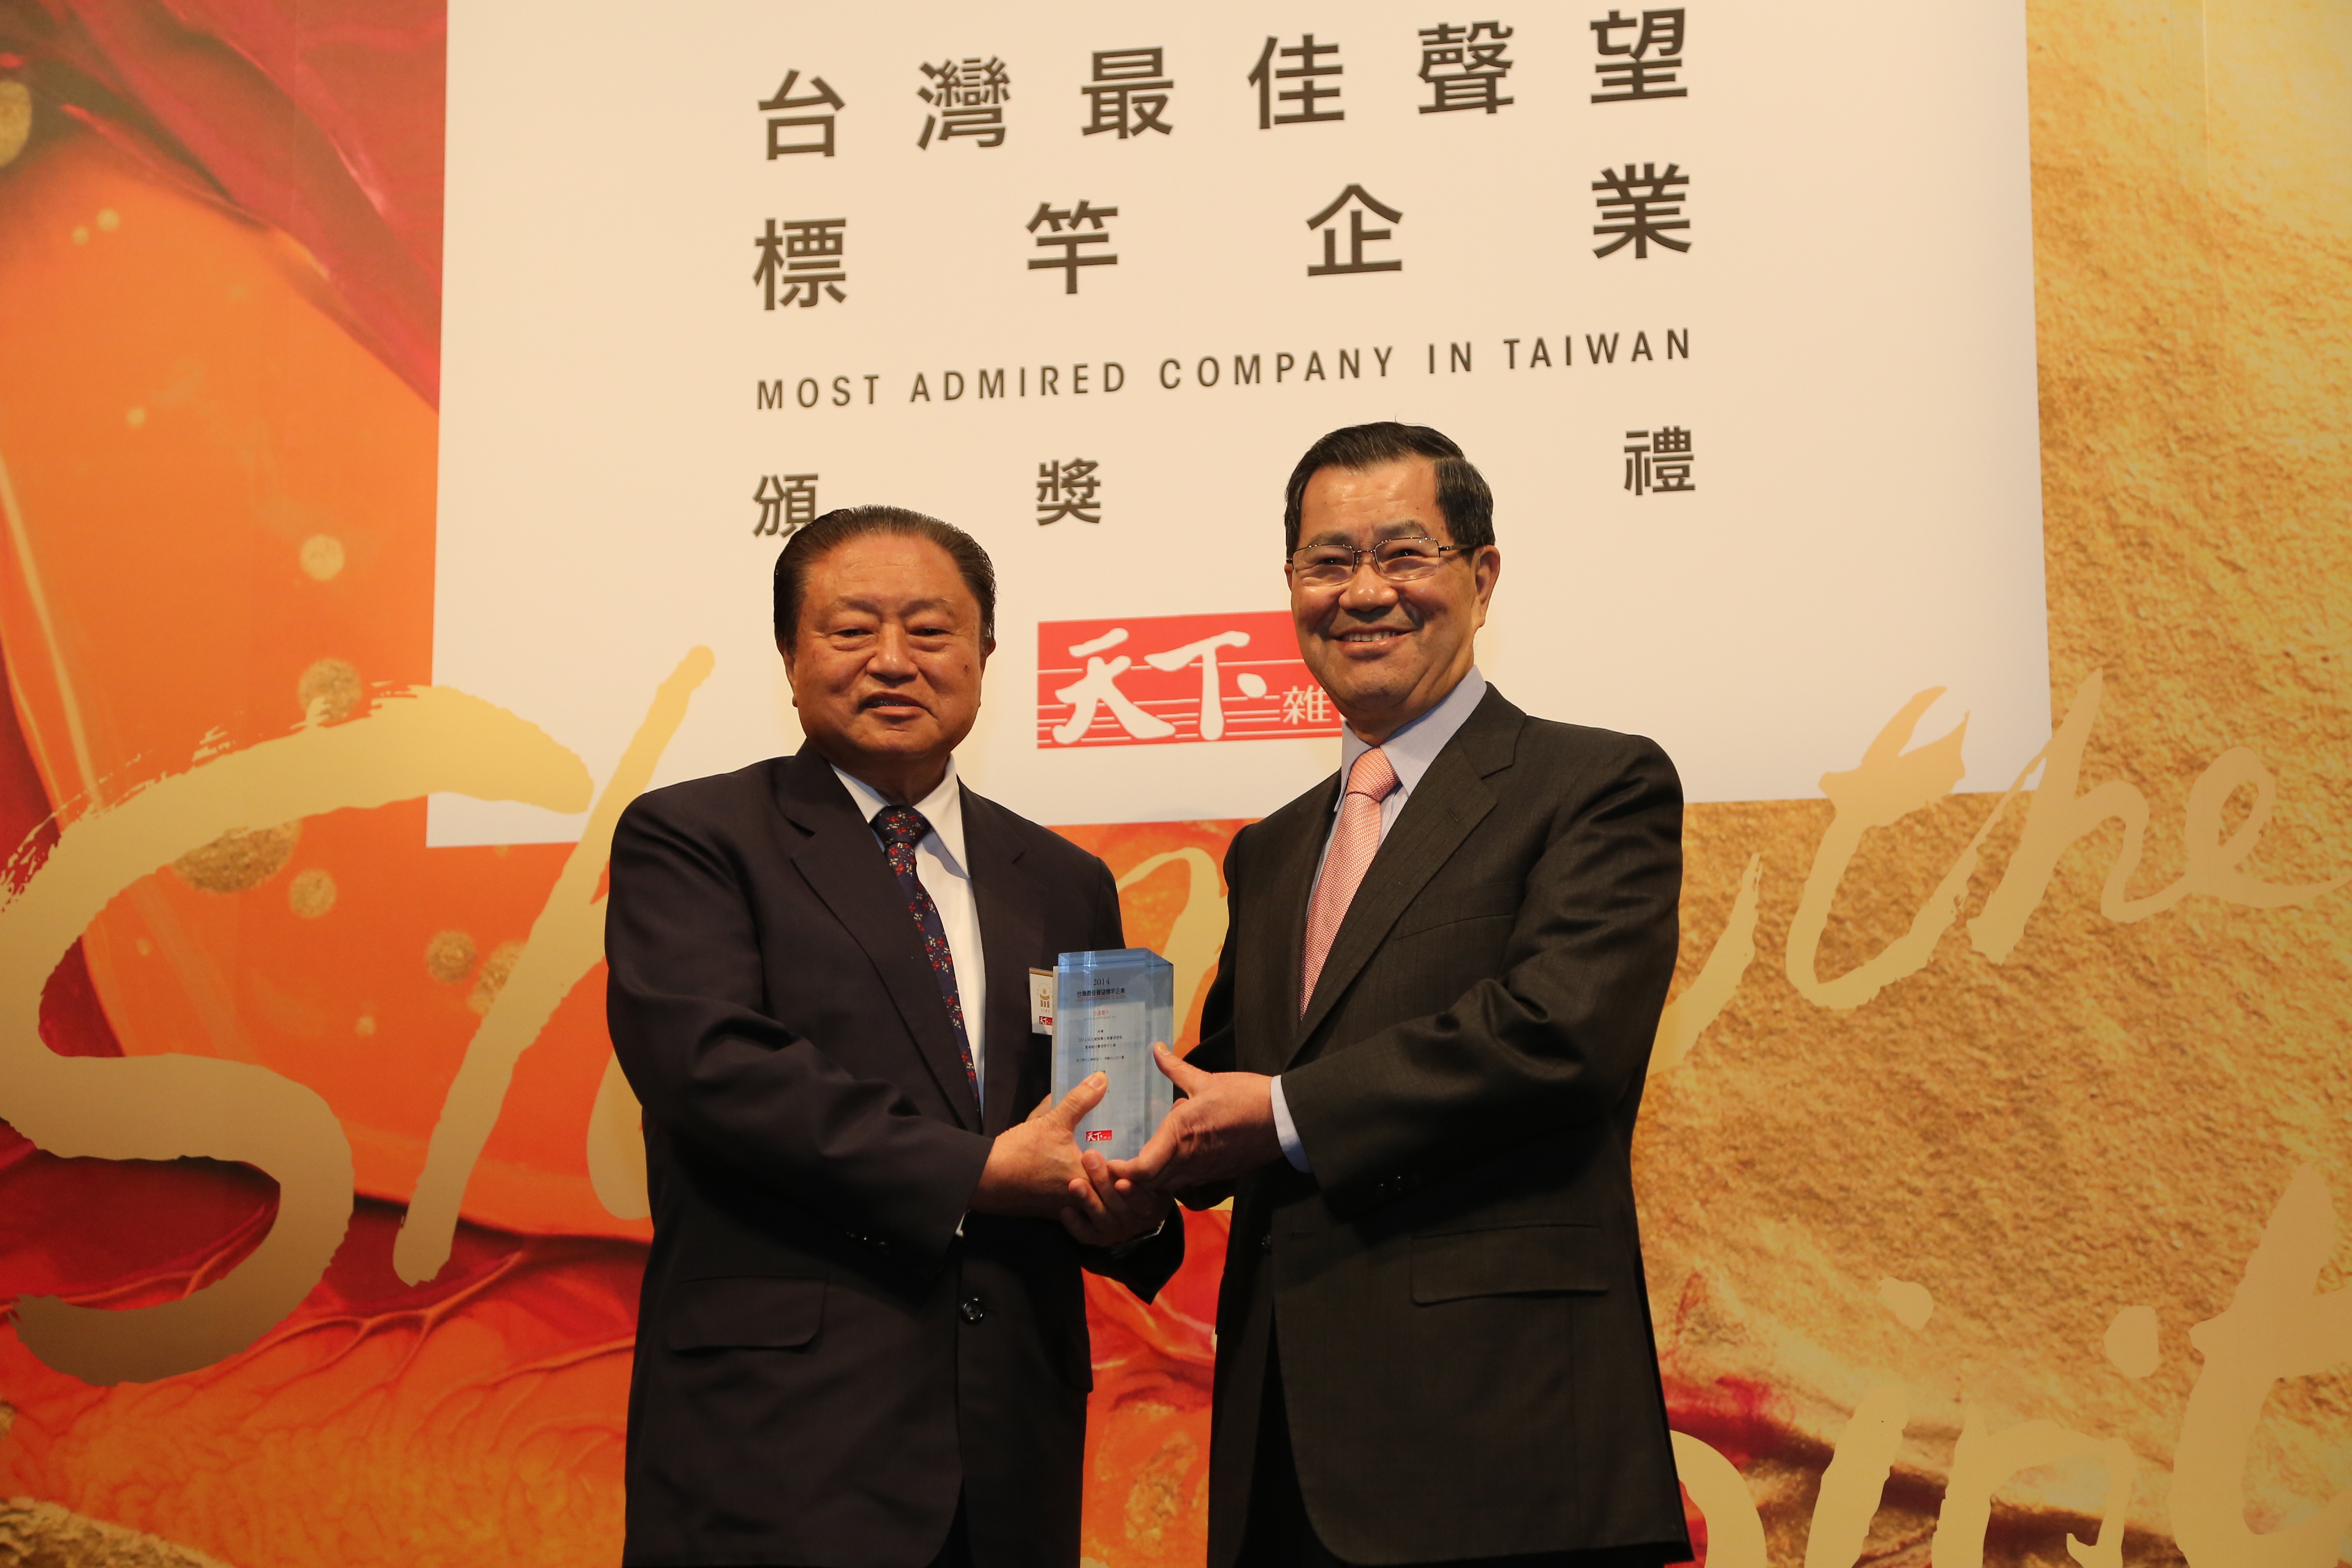 图一: 萧万长先生(右)颁授奖座予台达集团创办人暨荣誉董事长郑崇华先生(左)